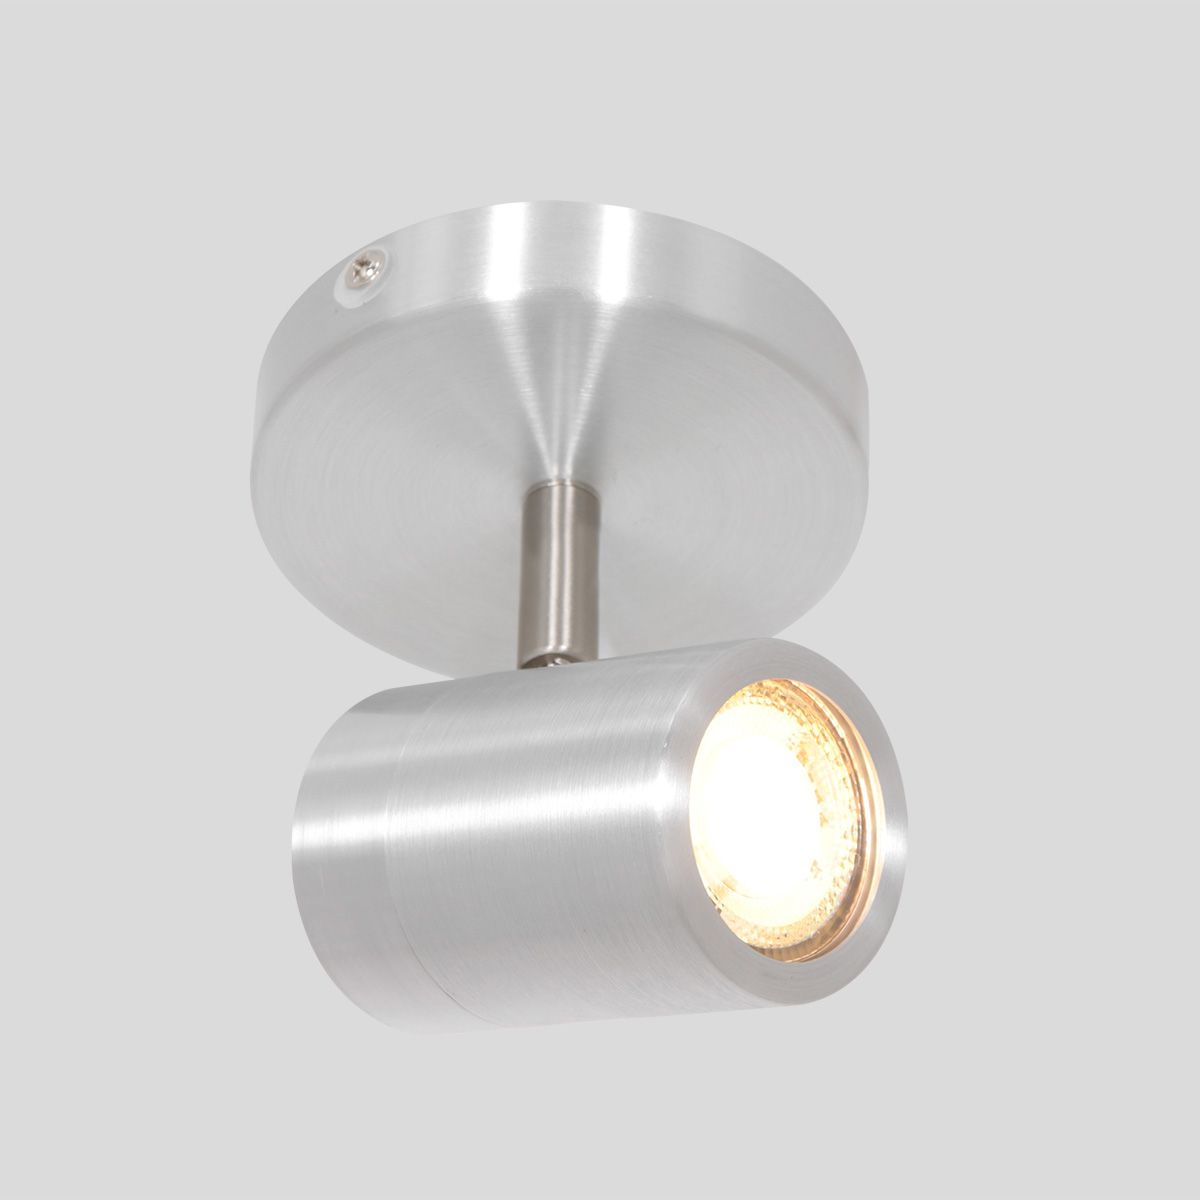 Billede af Spot-Up - loftlampe i metal i tre forskellige finish Metal - stål